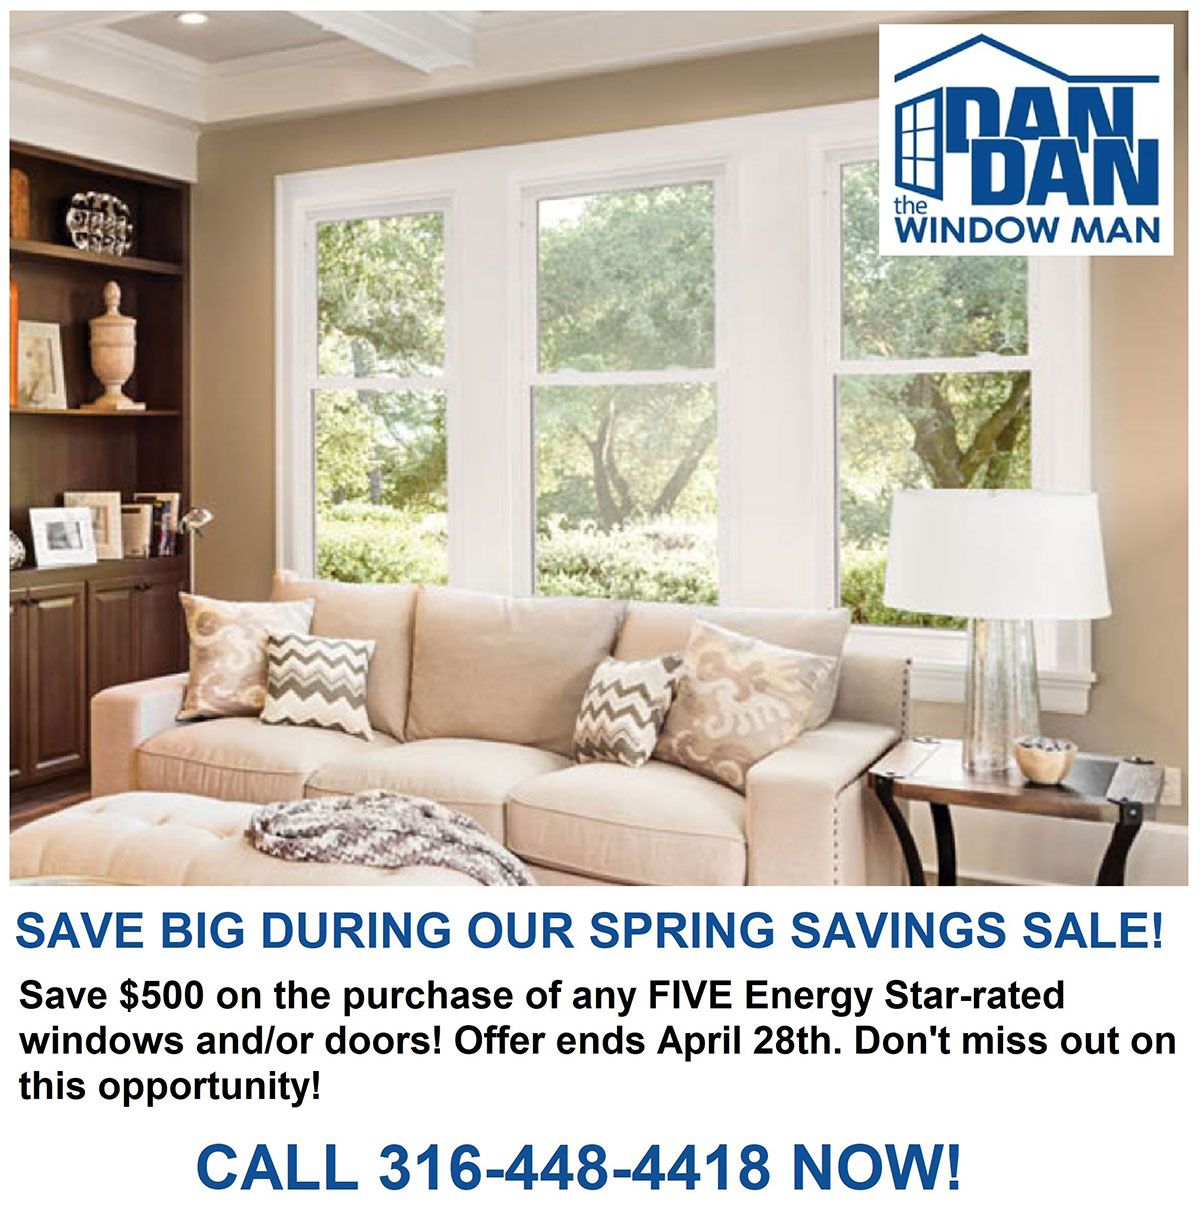 Spring savings sale